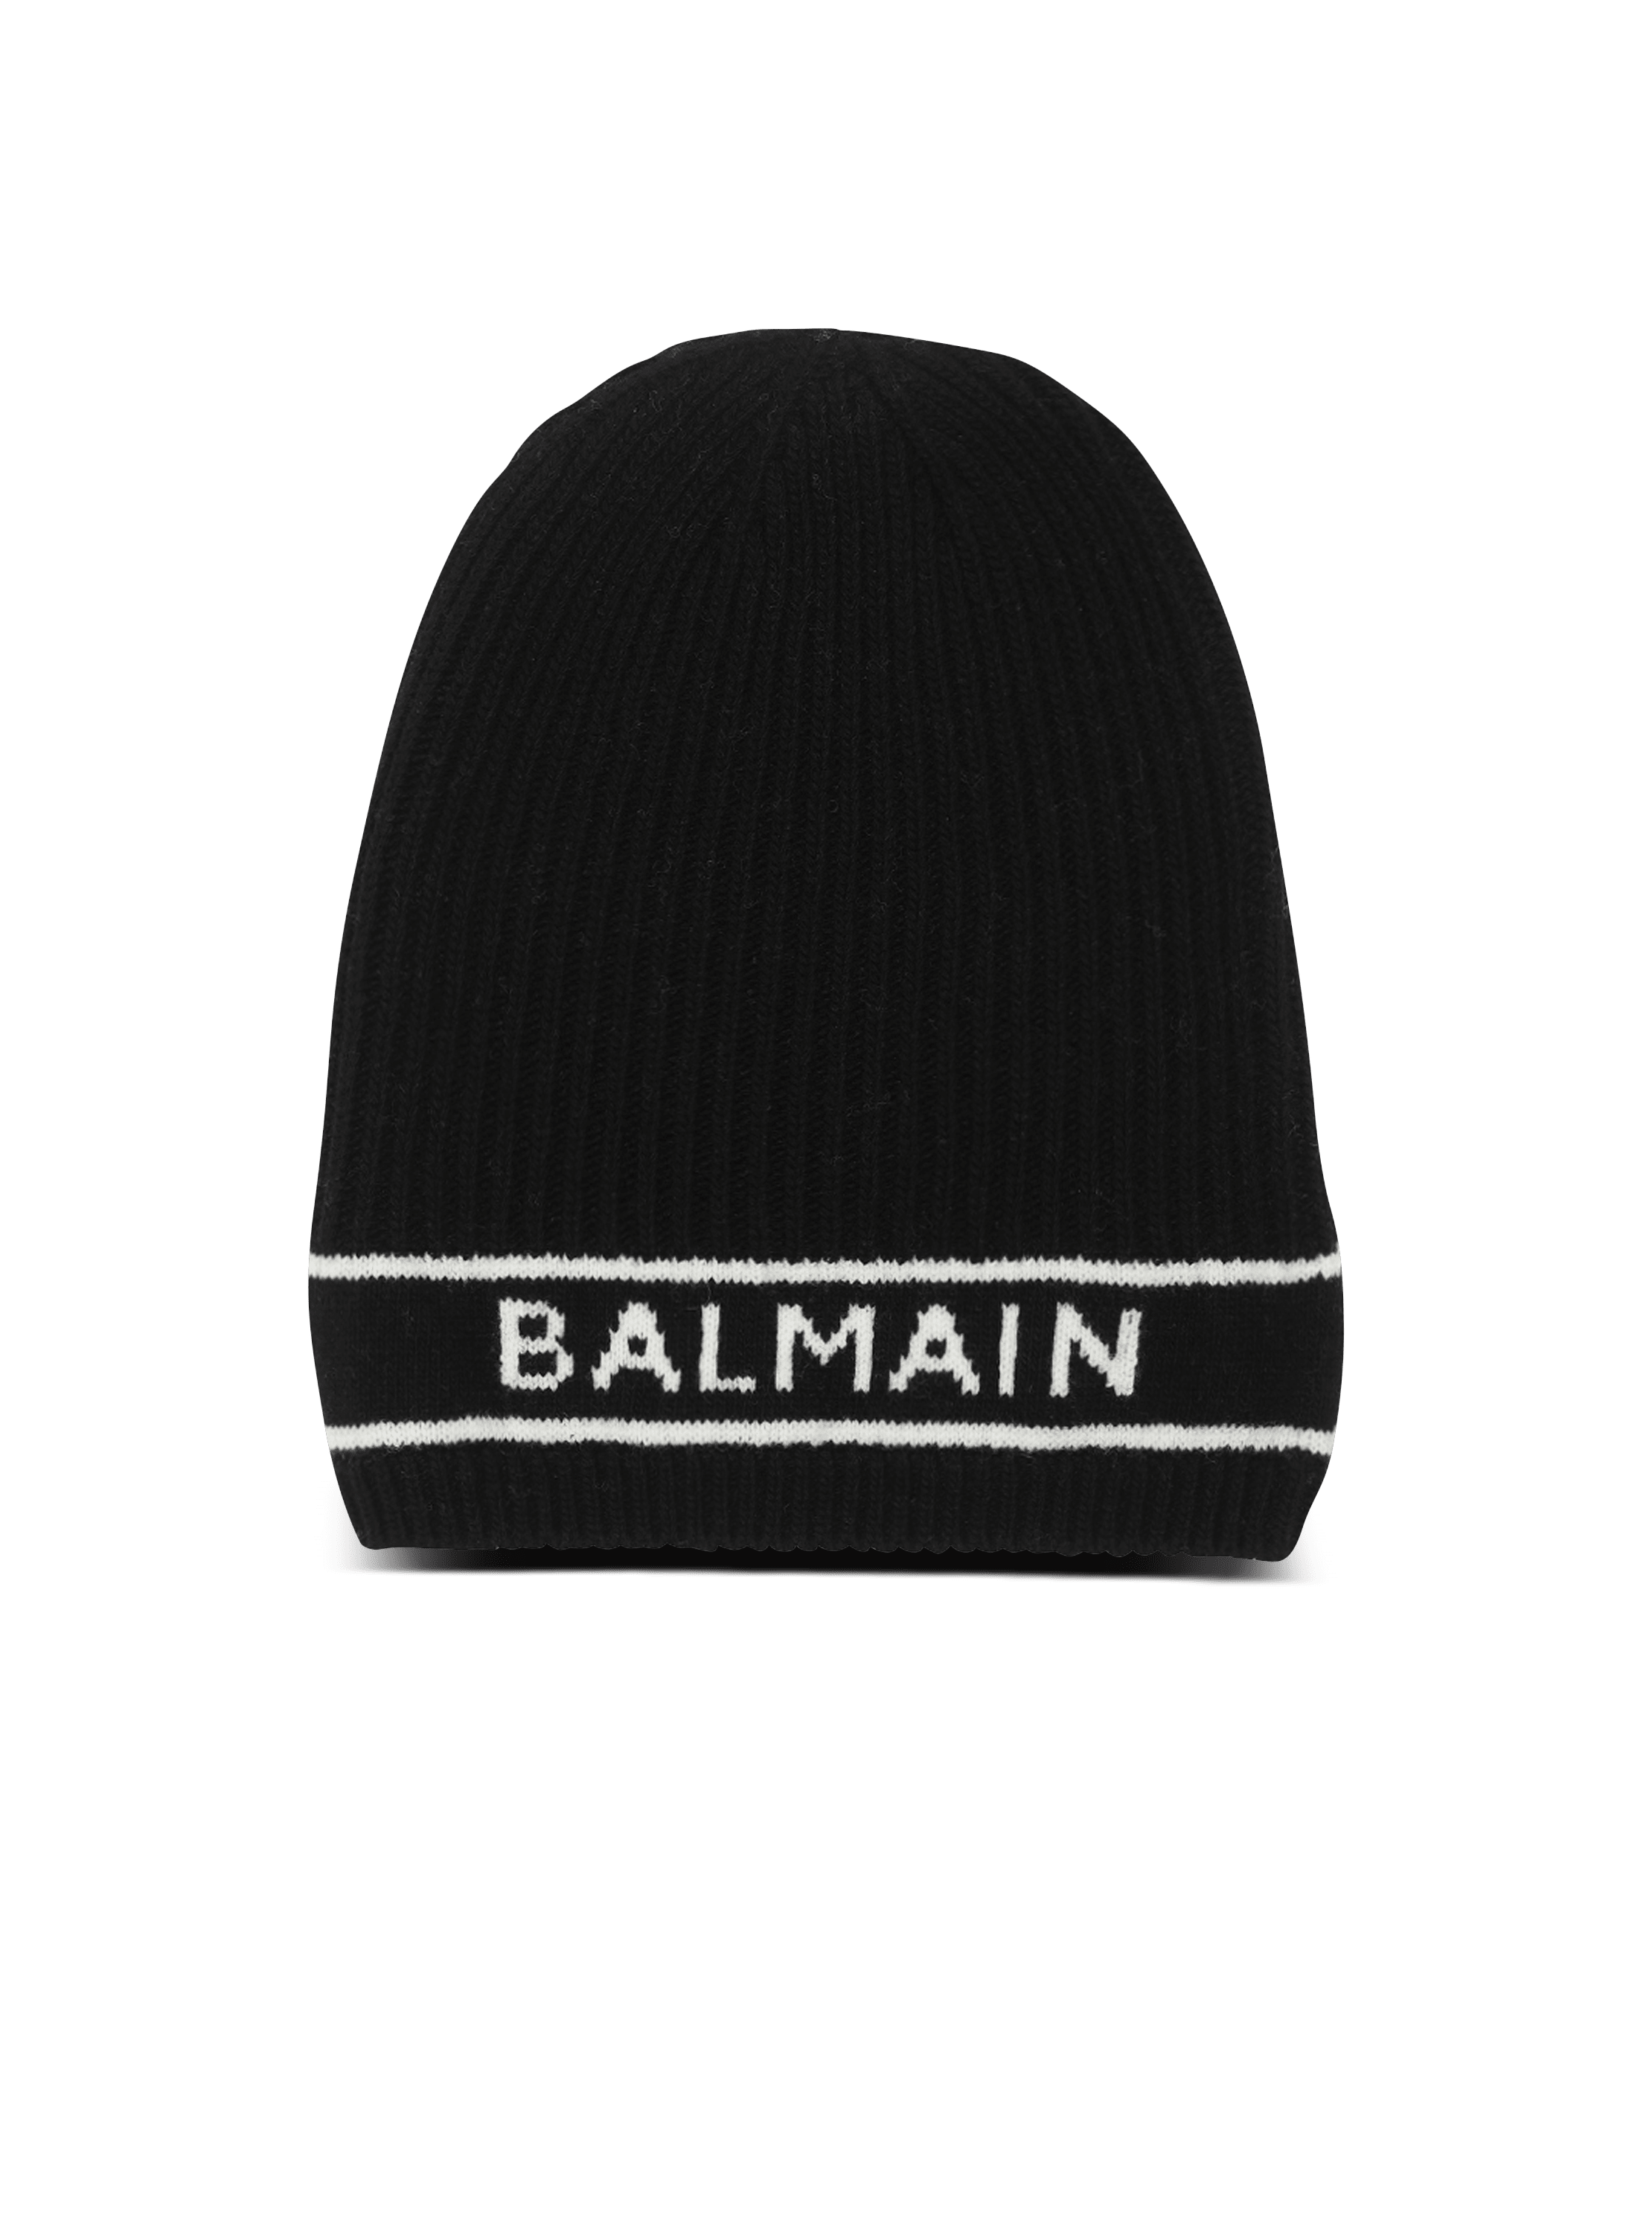 Mütze aus Wolle mit gesticktem Balmain-Logo in Weiß